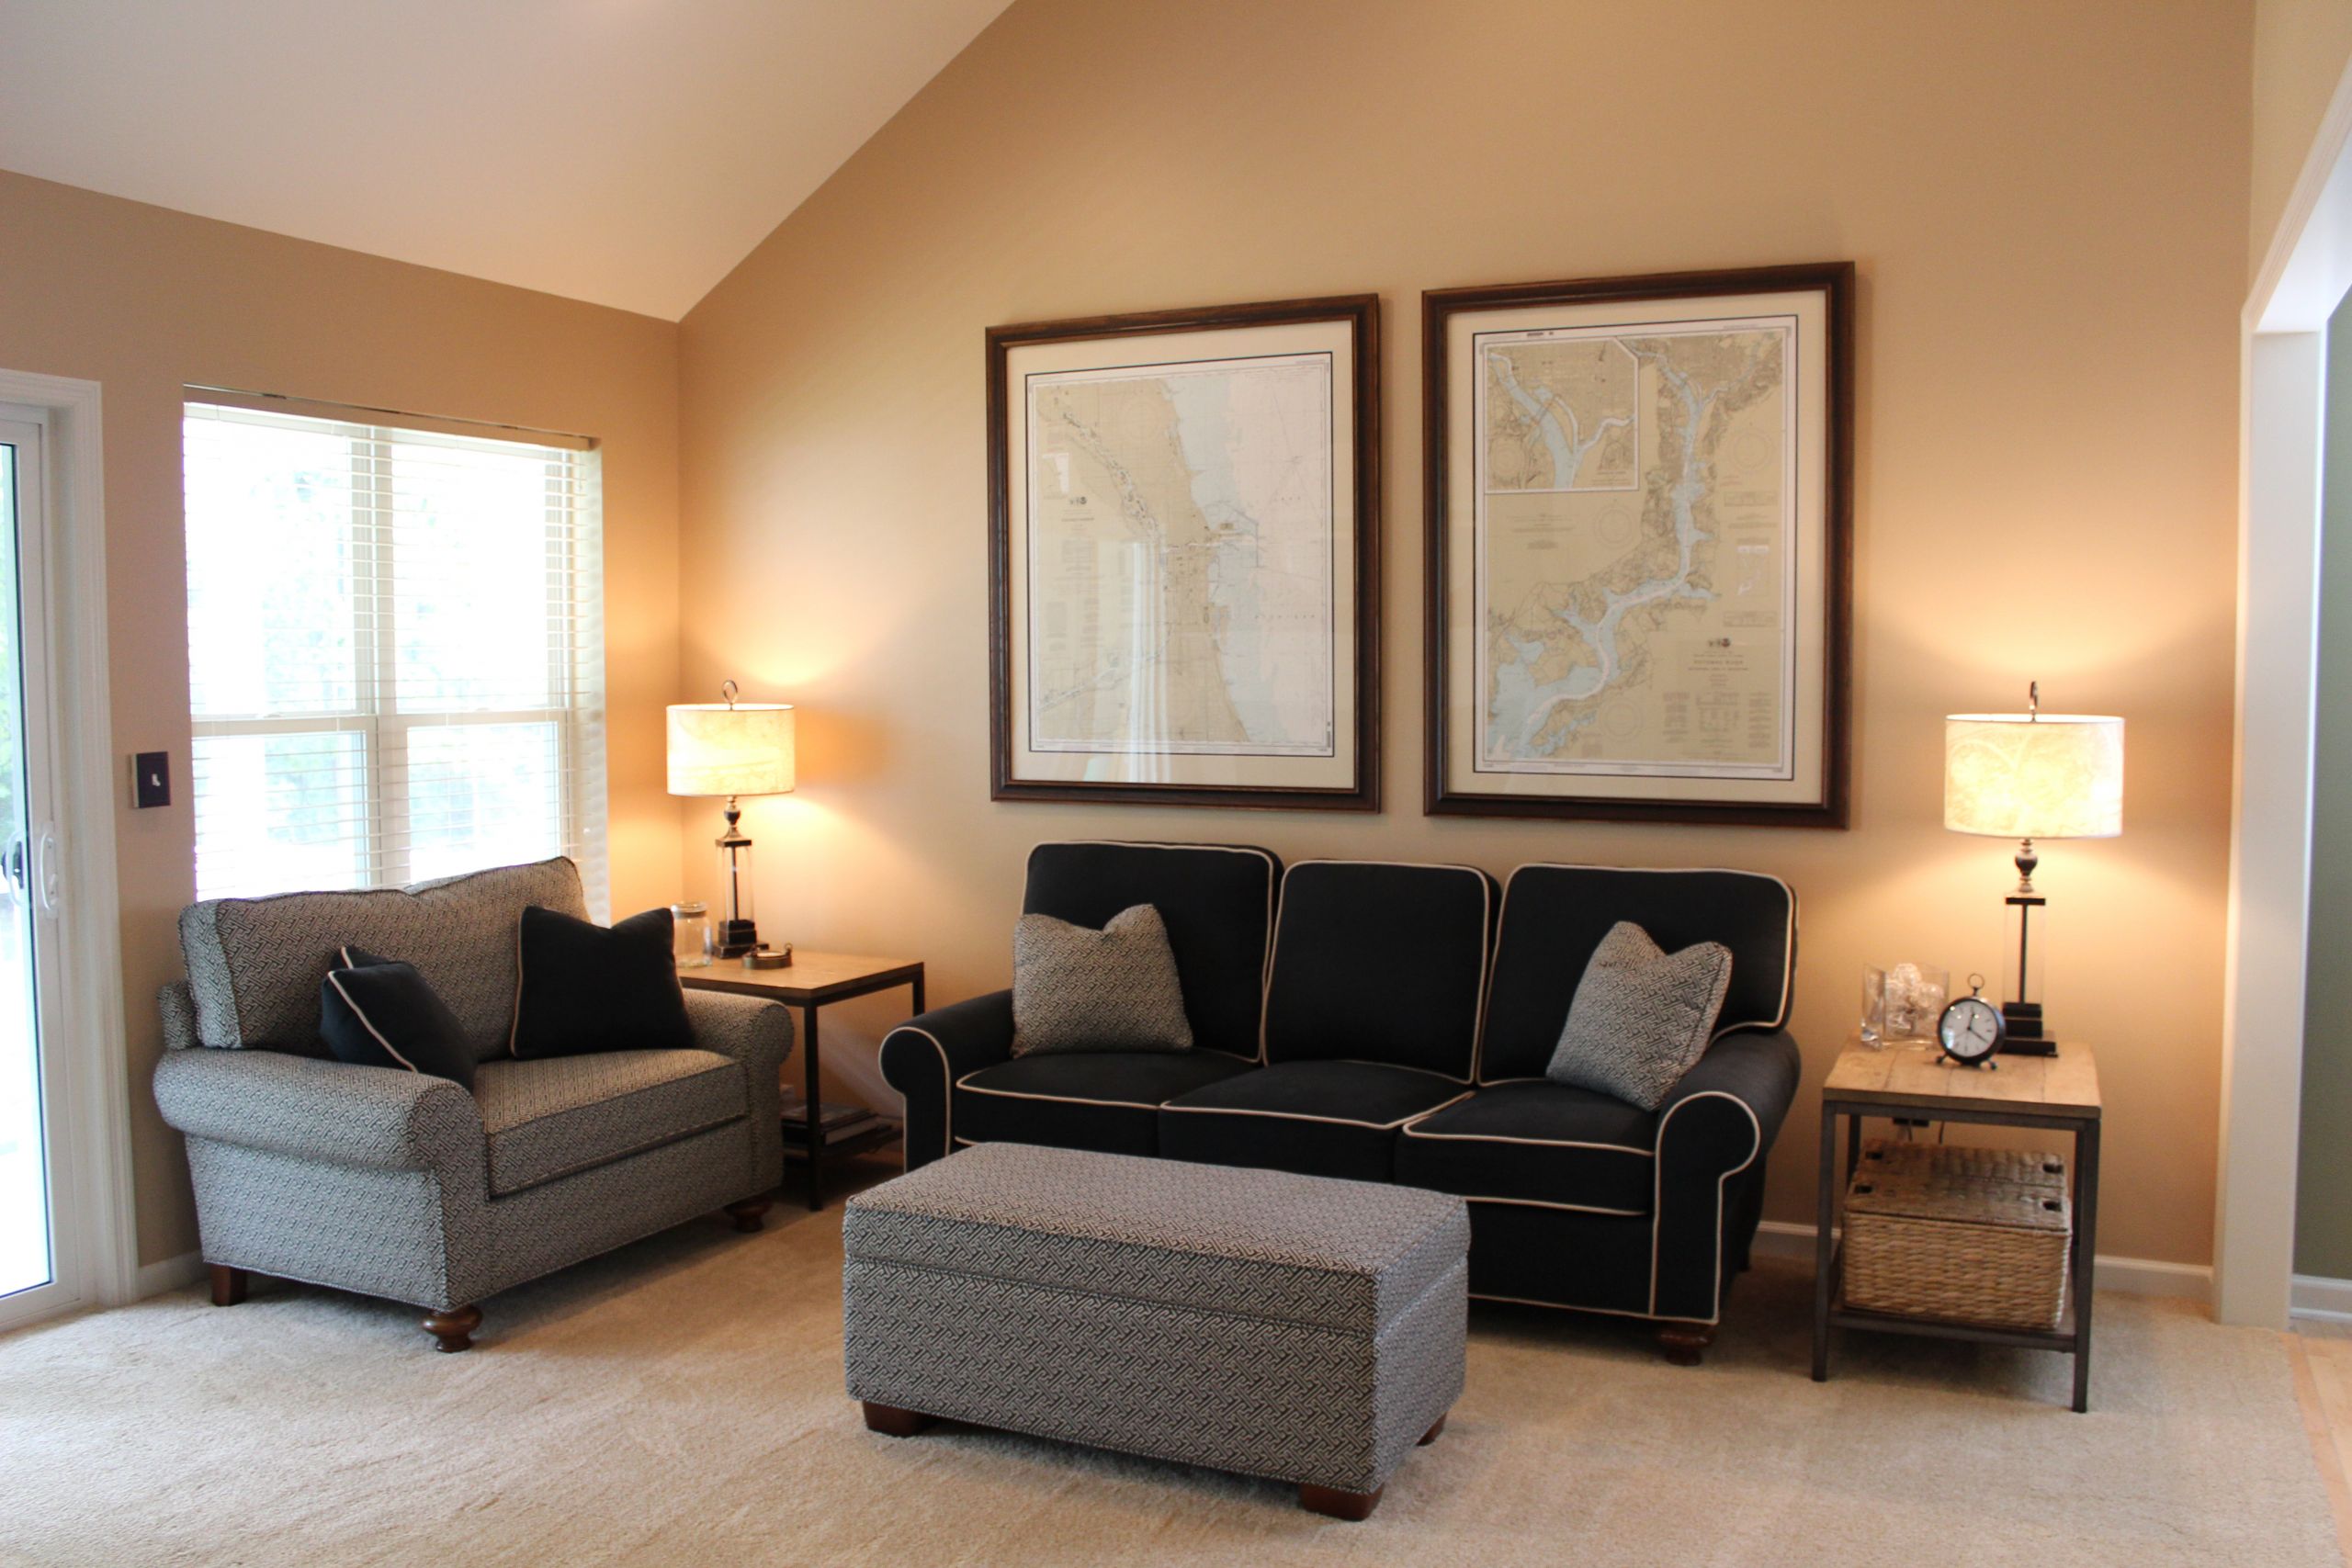 Living Room Paint Schemes
 45 Best Interior Paint Colors Ideas